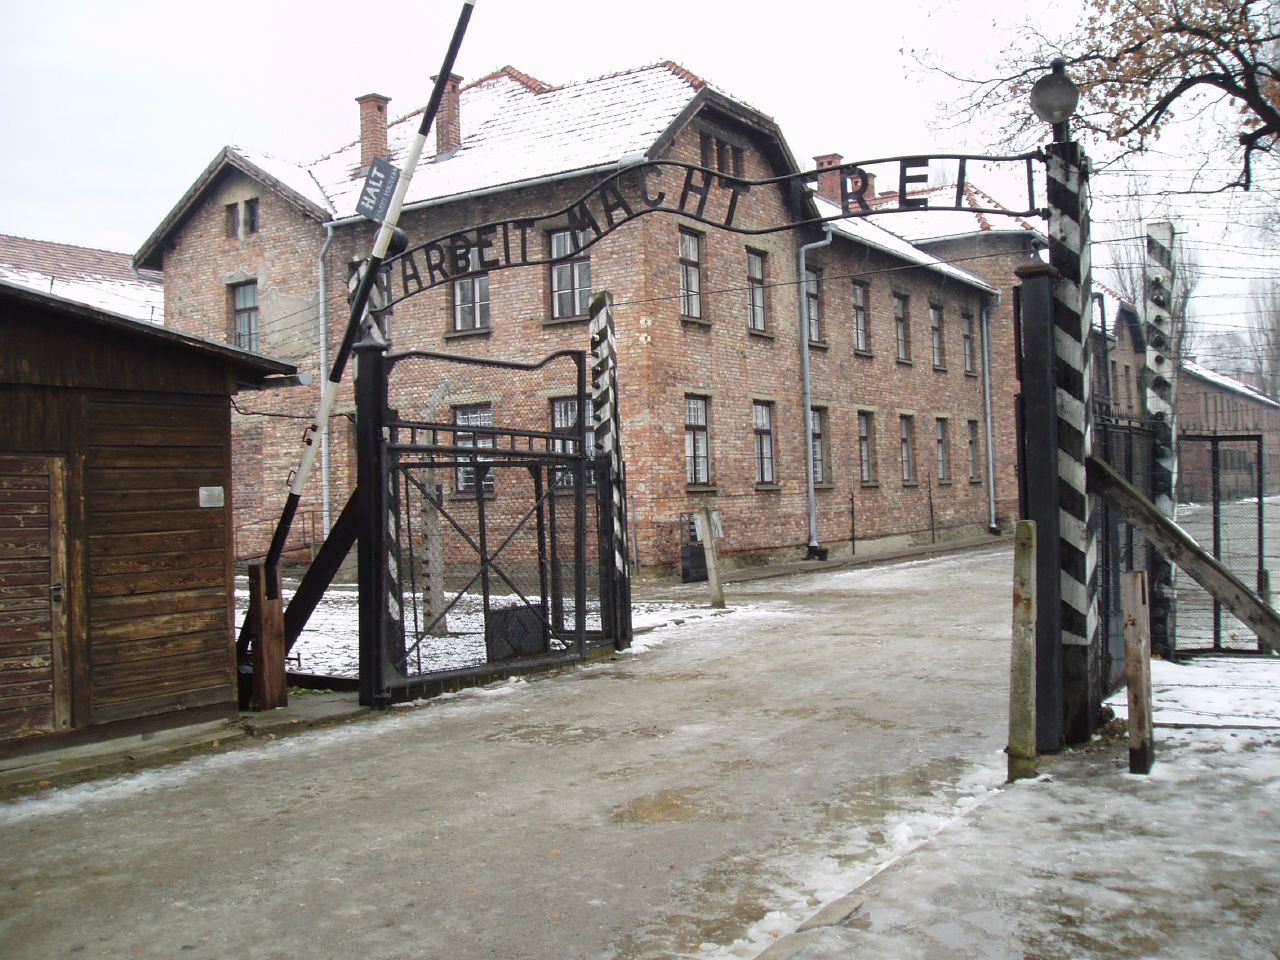 Entrada al camp de concentració d'Auschwitz